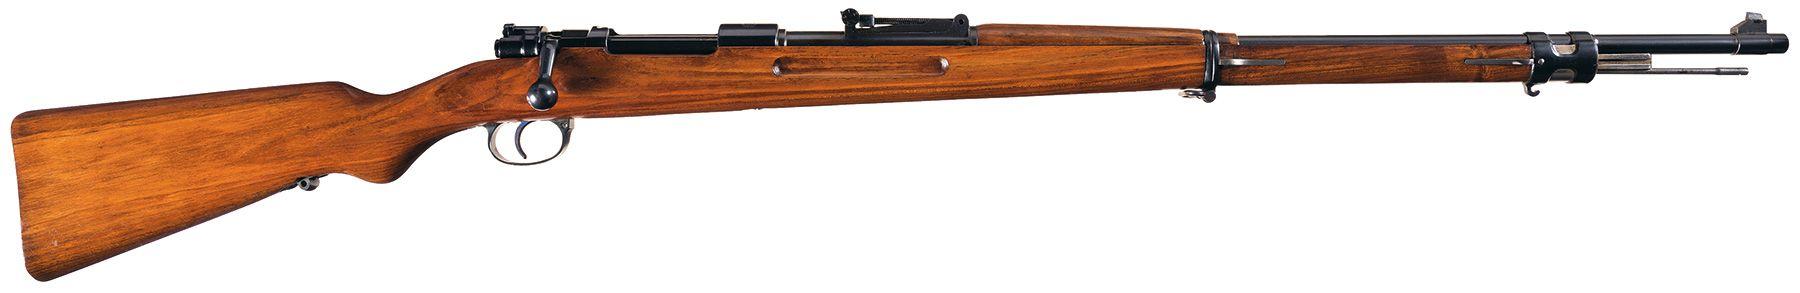 Mauser "Wehrmannsgewehr" Single Shot Rifle